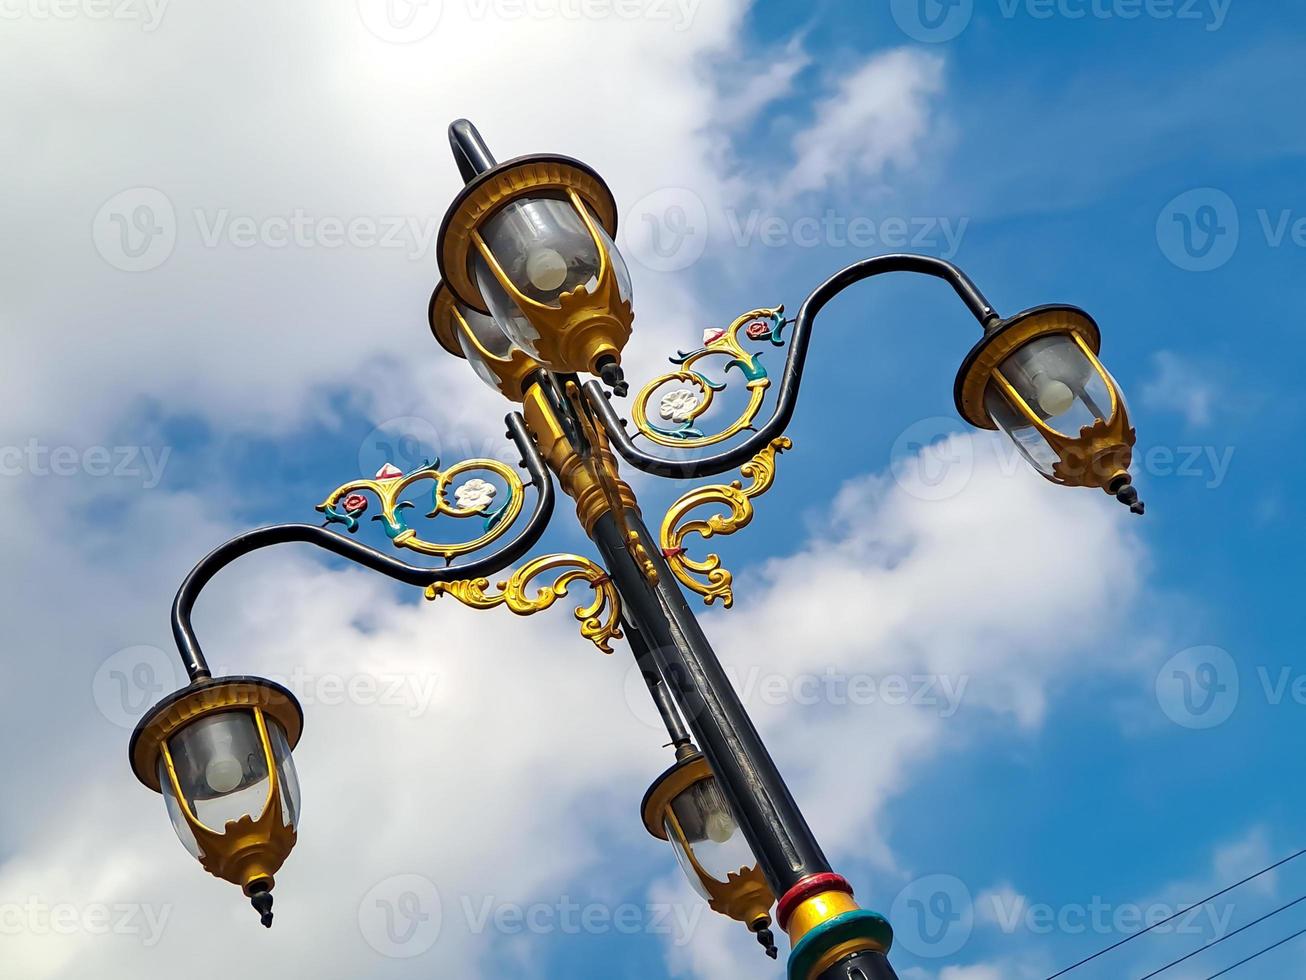 klassisk modell stad lampor med svart guld järn sniderier, skön ljus blå himmel skott på låg vinkel. foto